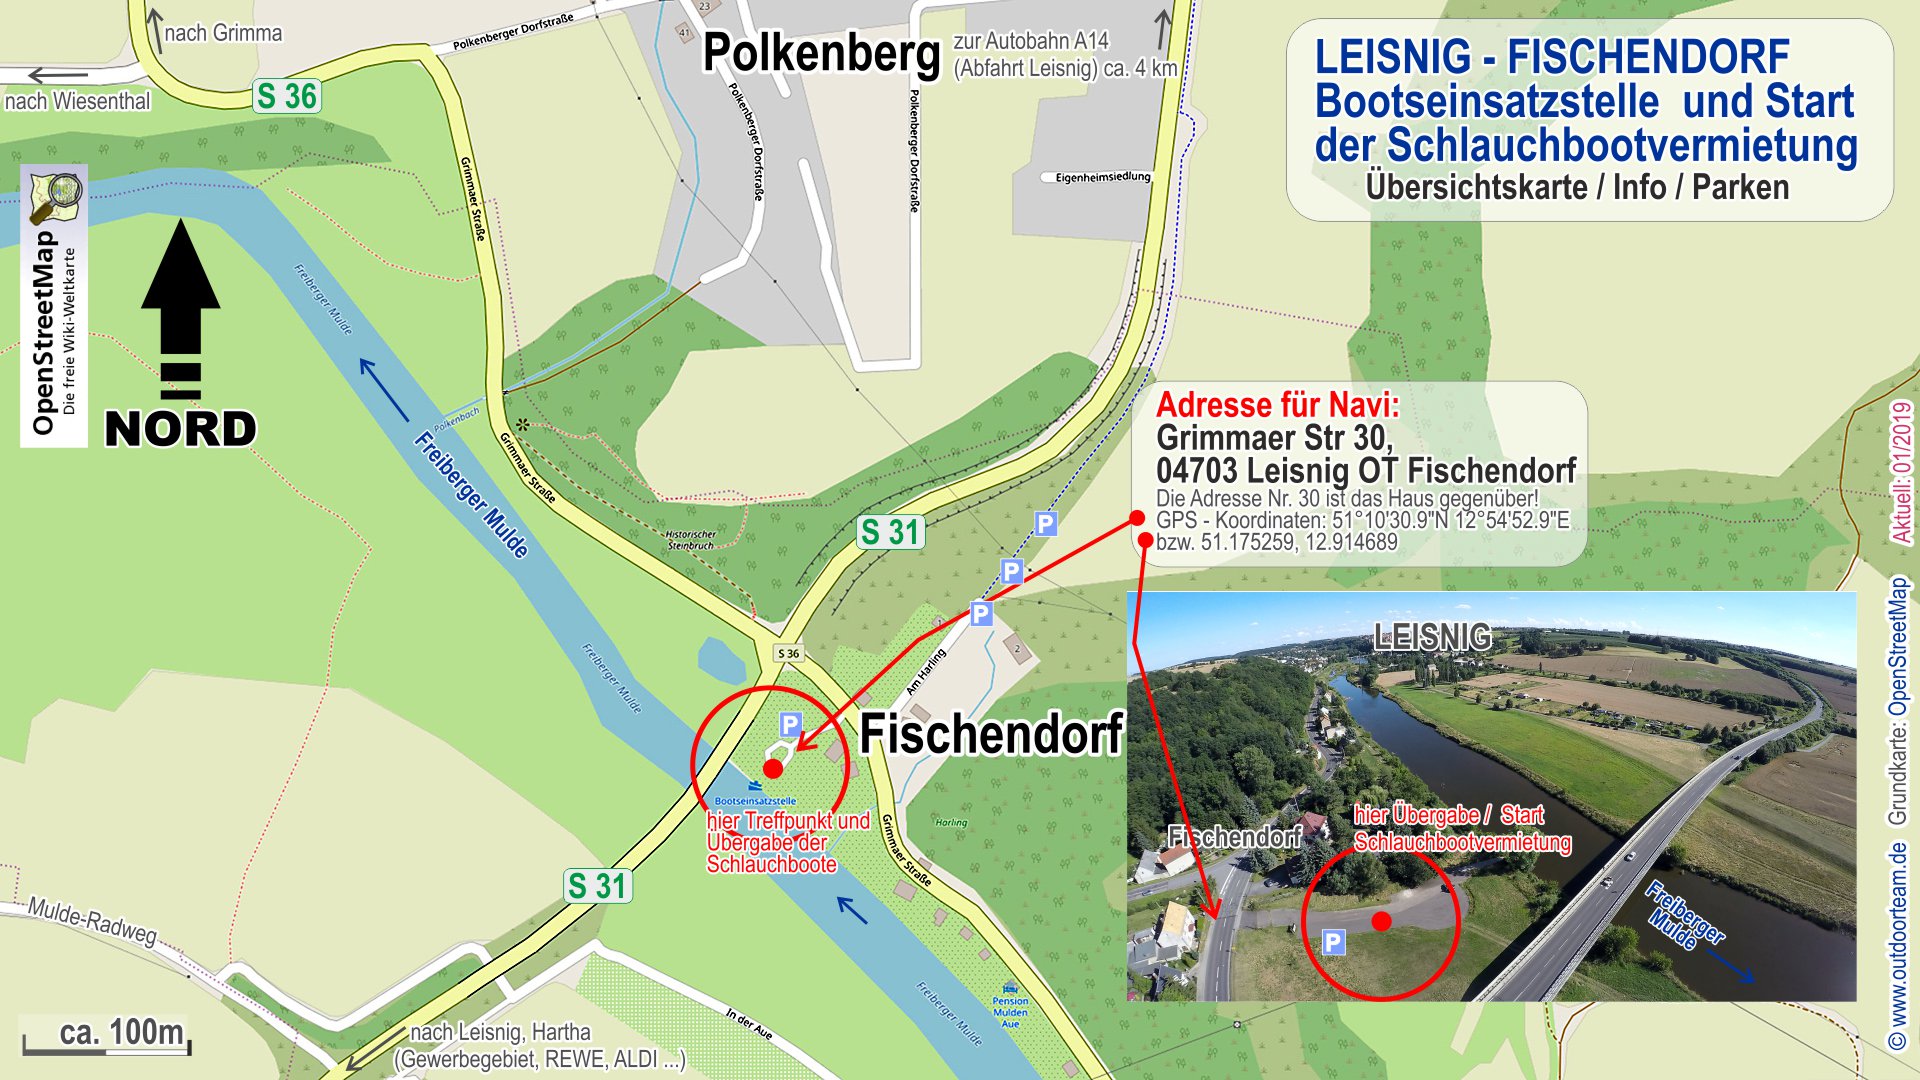 Detail- und Anreisekarte / Tourstart an der öffentliche Bootseinsatzstelle in 04703 Leisnig - Fischendorf